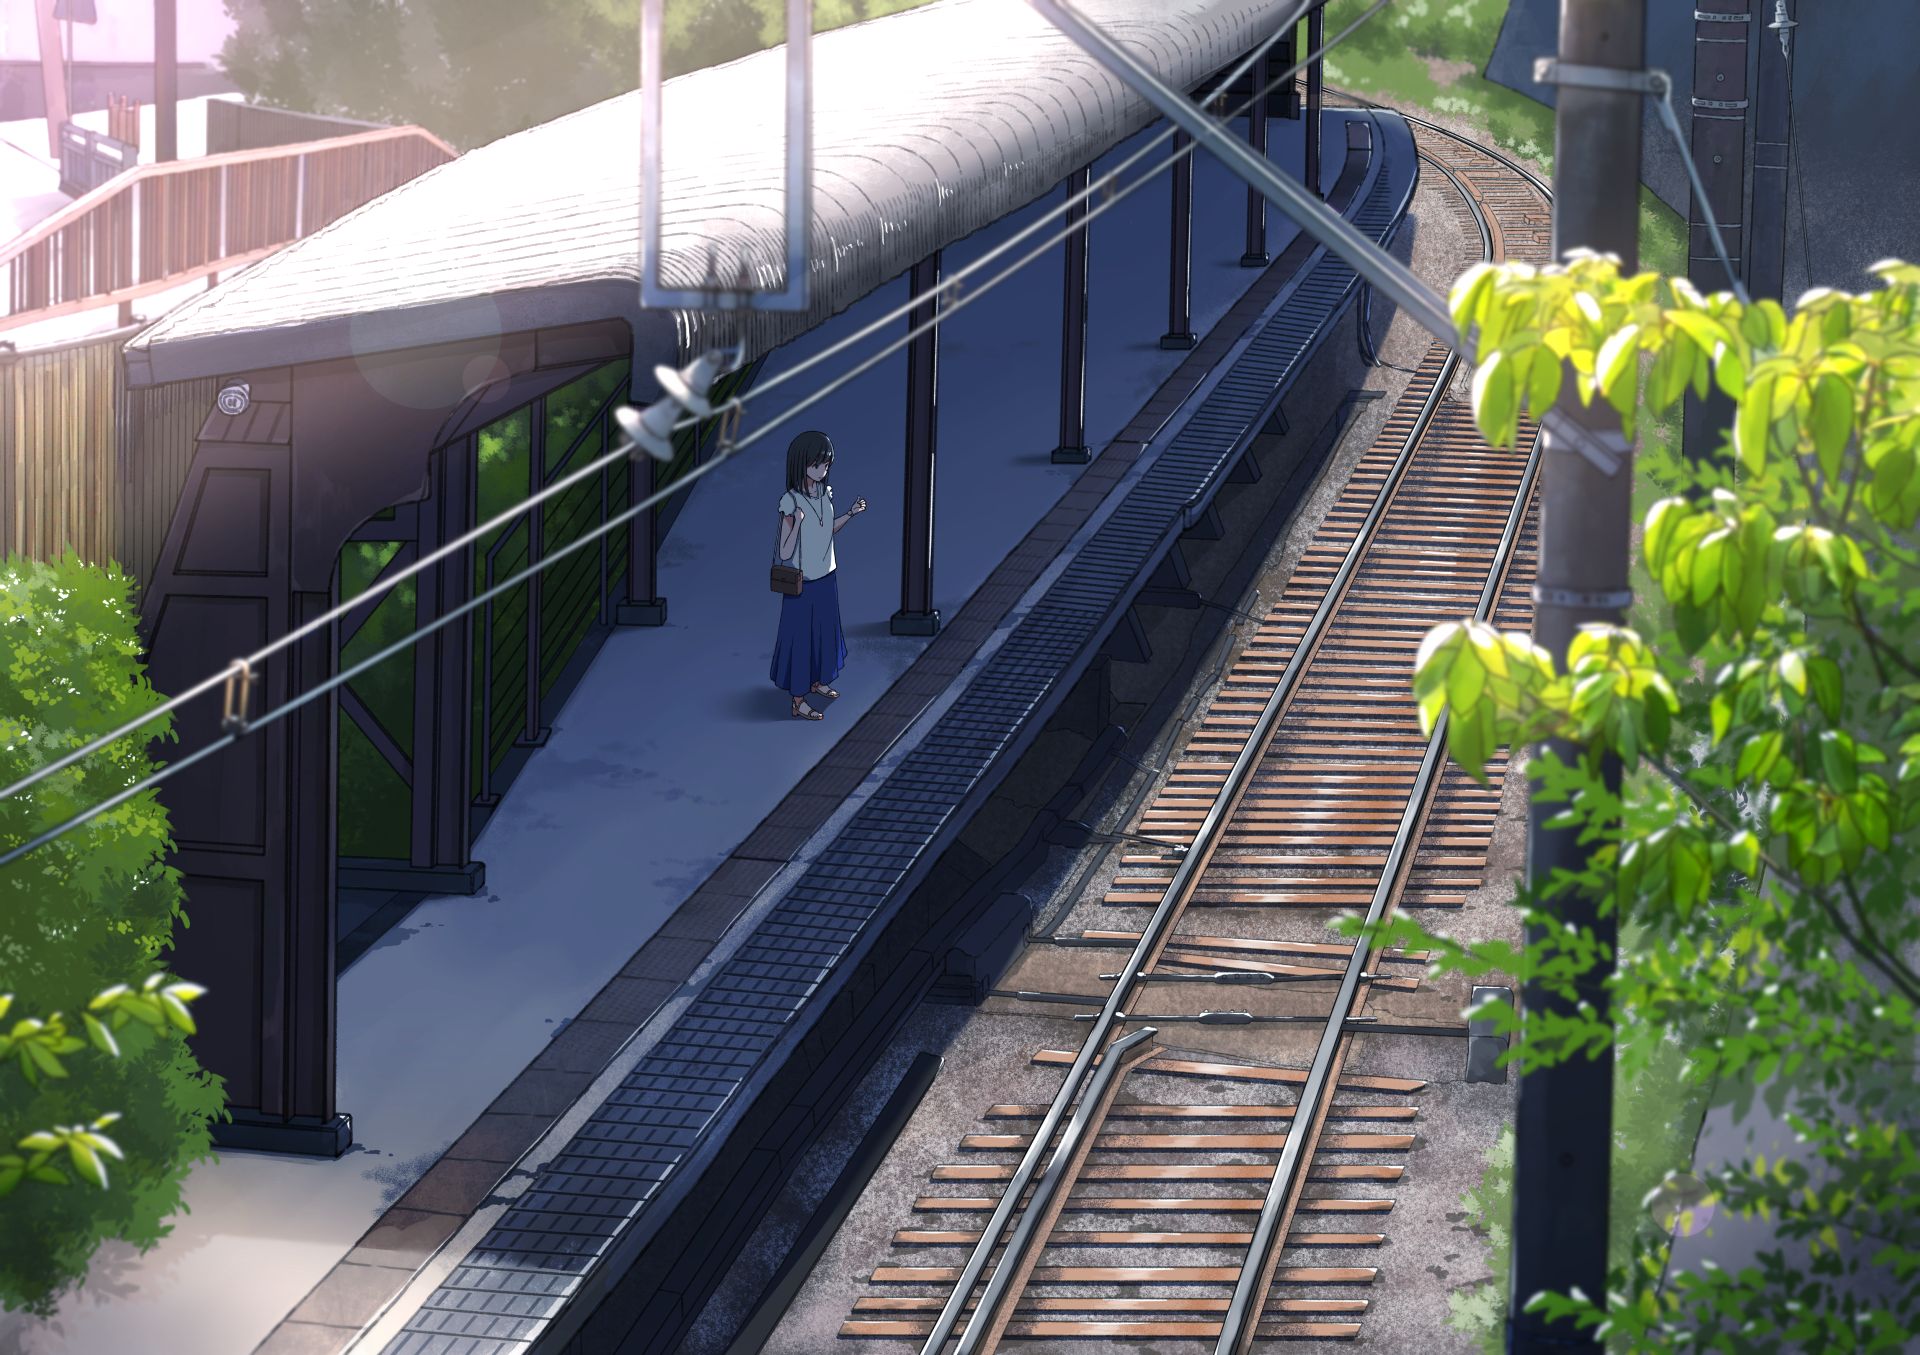 Скачать картинку Аниме, Железнодорожный Вокзал в телефон бесплатно.